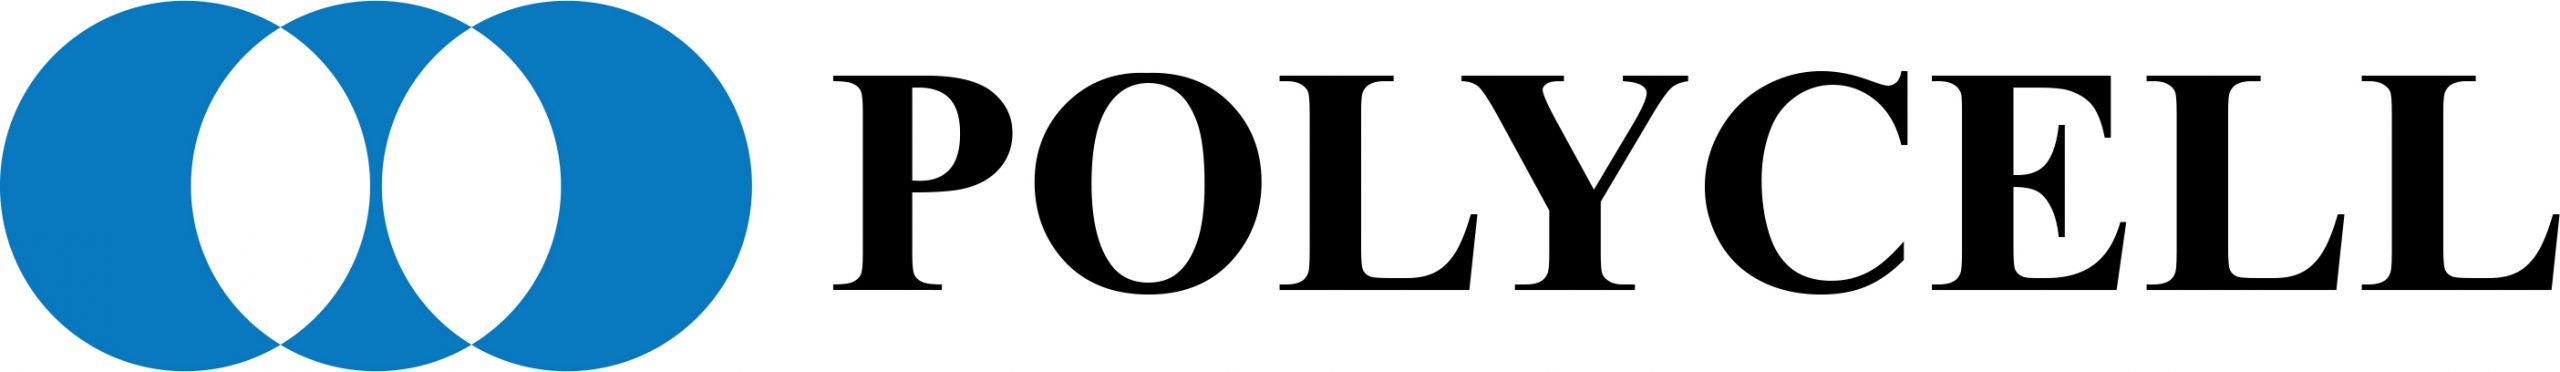 POLYON_logo